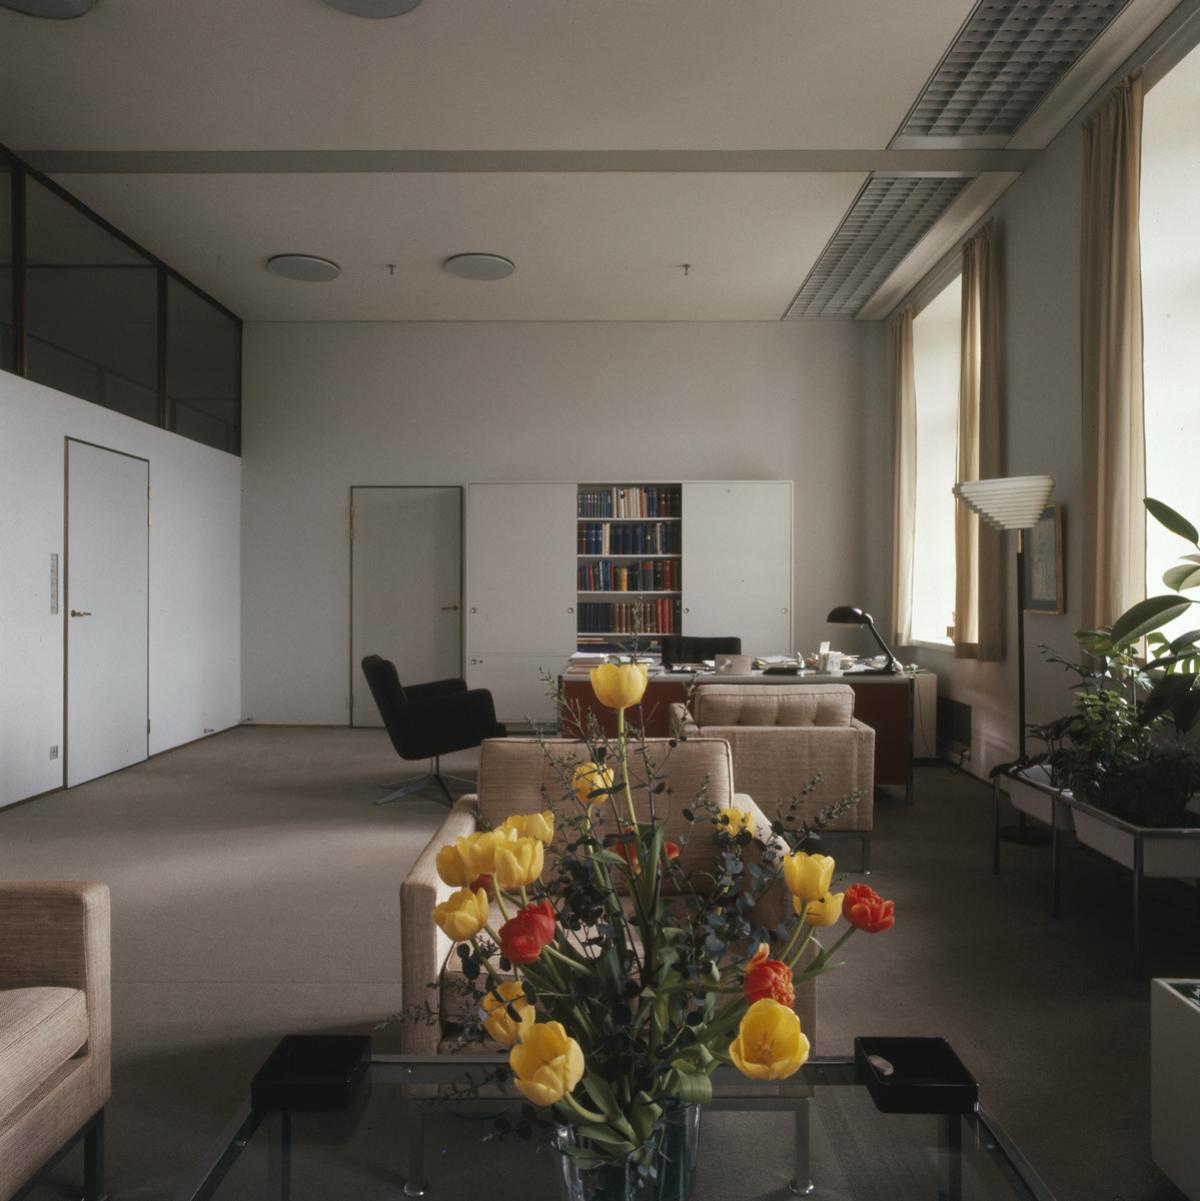 Sisäkuva Helsingin kaupungintalon toimistotiloista. Valoisassa, vaaleassa huoneessa on sohvia ja nojatuoleja. Etualalla kukkakimppu ruukussa.